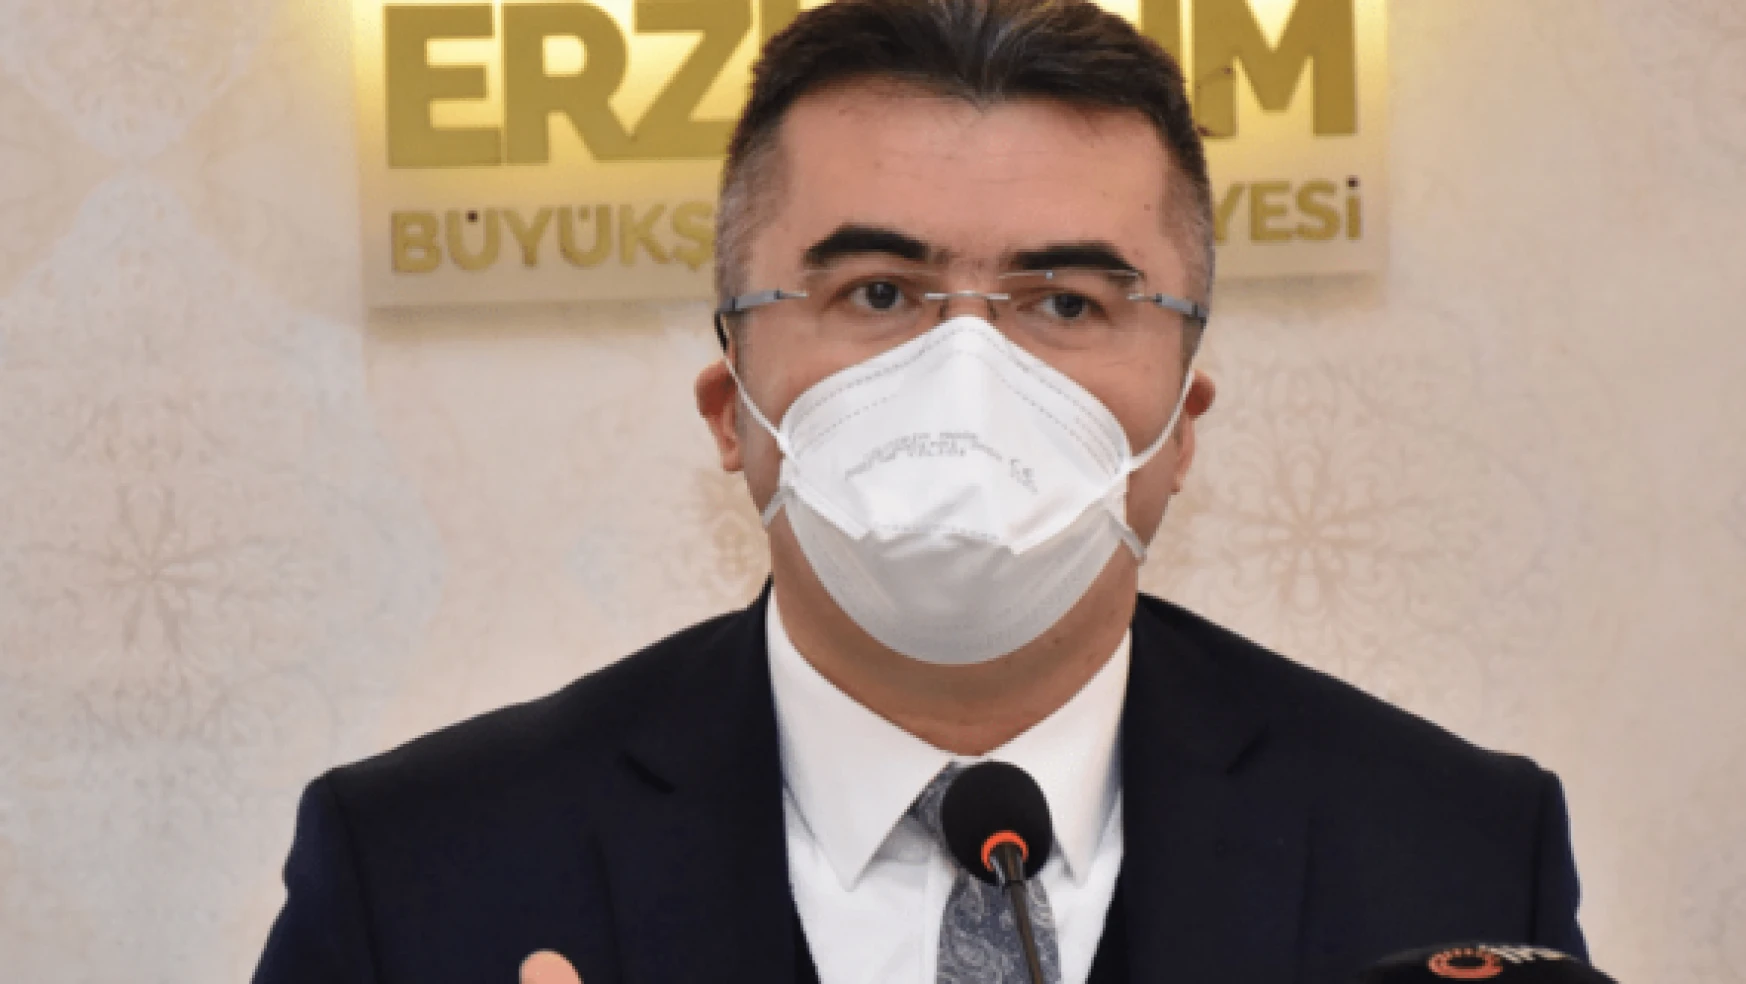 Vali Memiş: " Erzurum'da vakalar son iki günde 10 kat arttı"